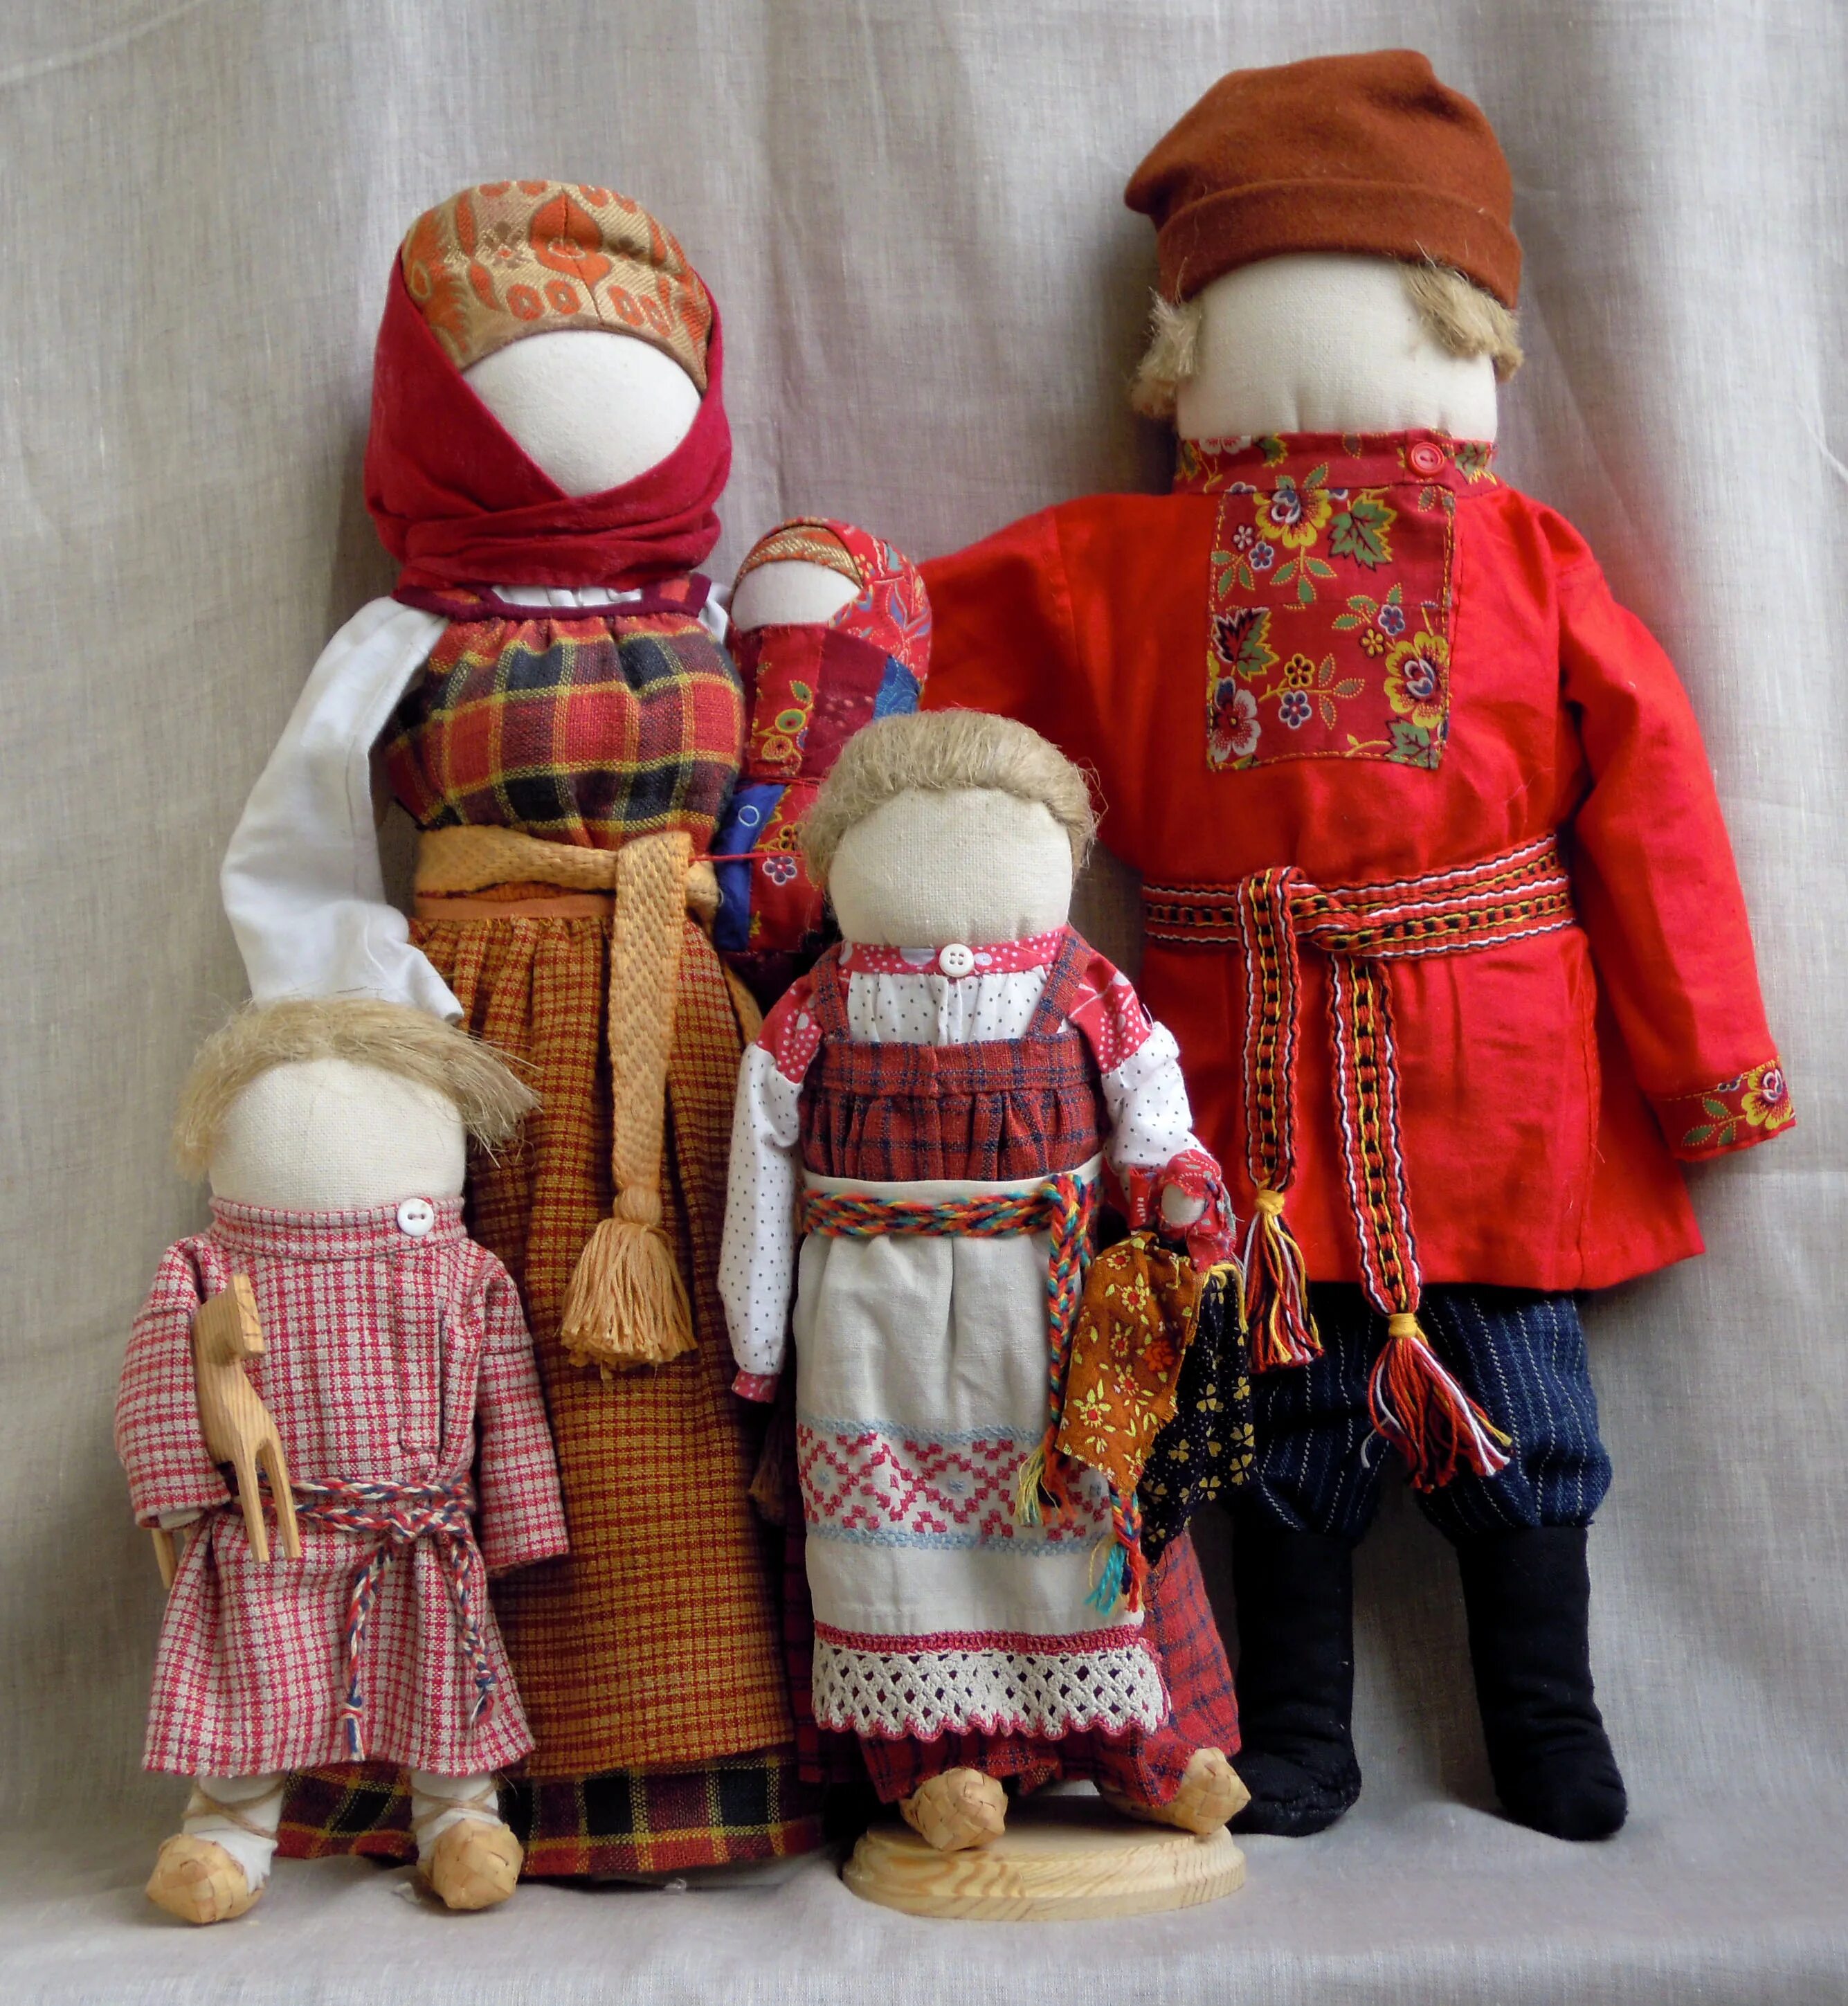 Традиционная народная тряпичная кукла. Вятская народная тряпичная кукла. Традиционная кукла русская Княжна. «Народная тряпичная кукла» «воспитательная кукла». Русские народные игрушки куклы